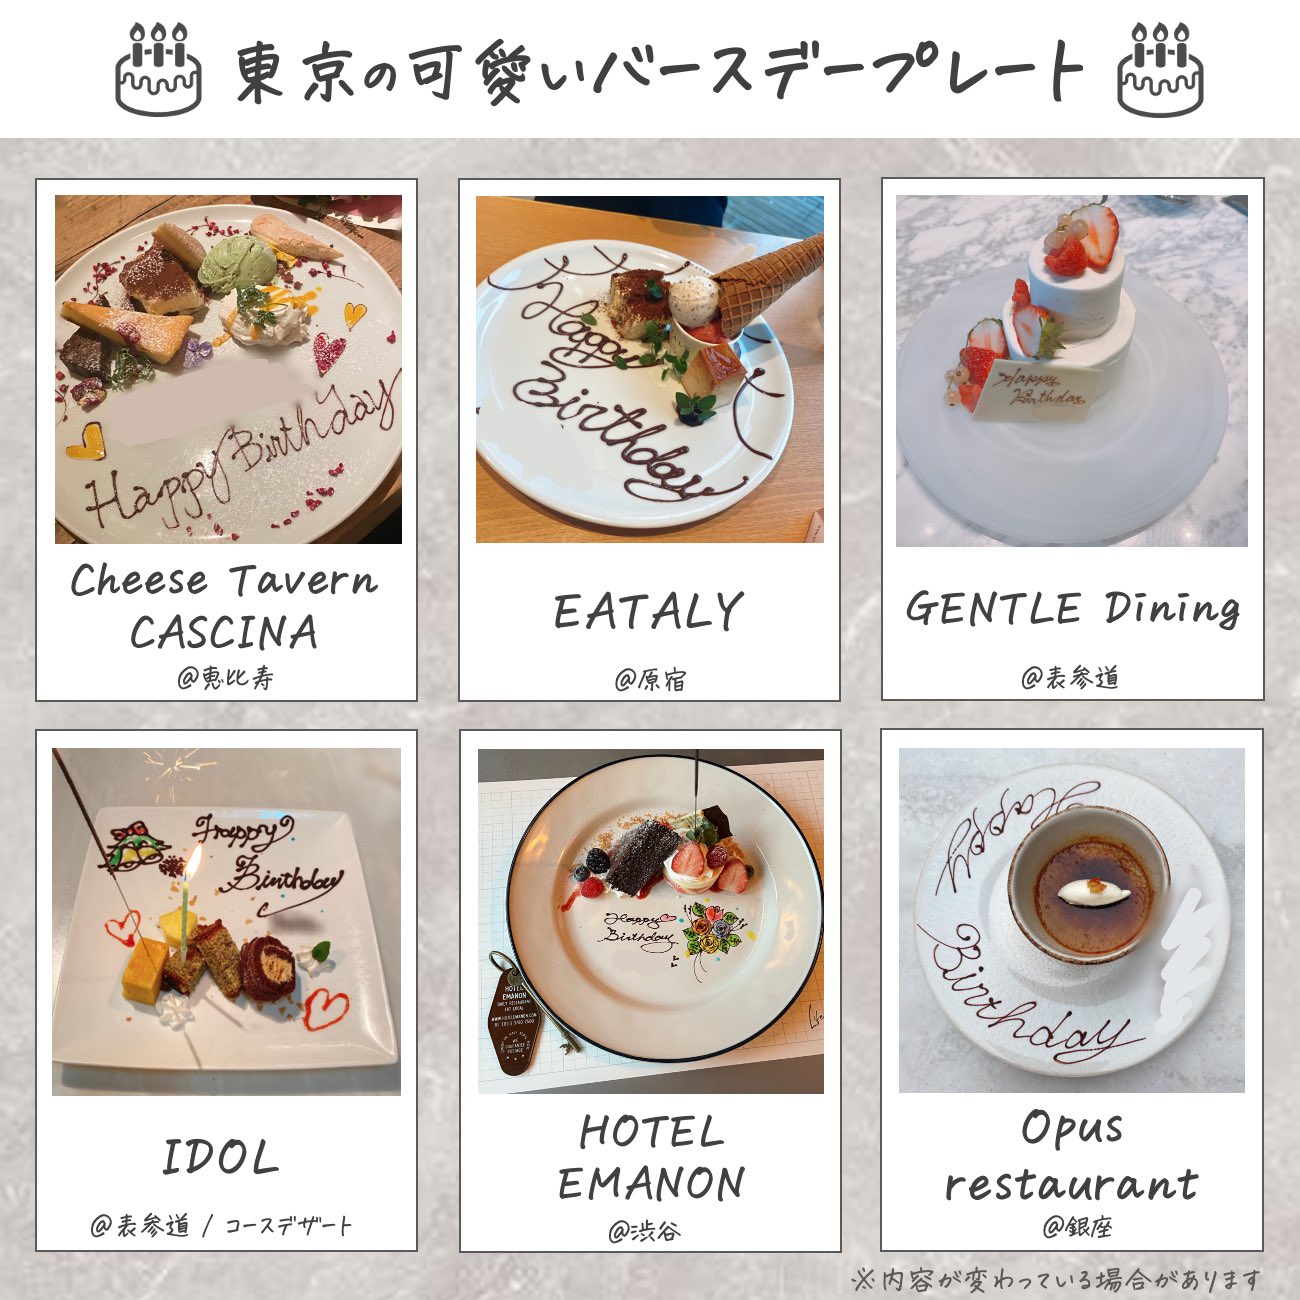 そばかすちゃん 東京の可愛いバースデープレート ケーキサプライズをすることもされることも多いので 都内の可愛かった バースデープレートのお店を12個まとめてみました T Co Zfzn4ytutg Twitter